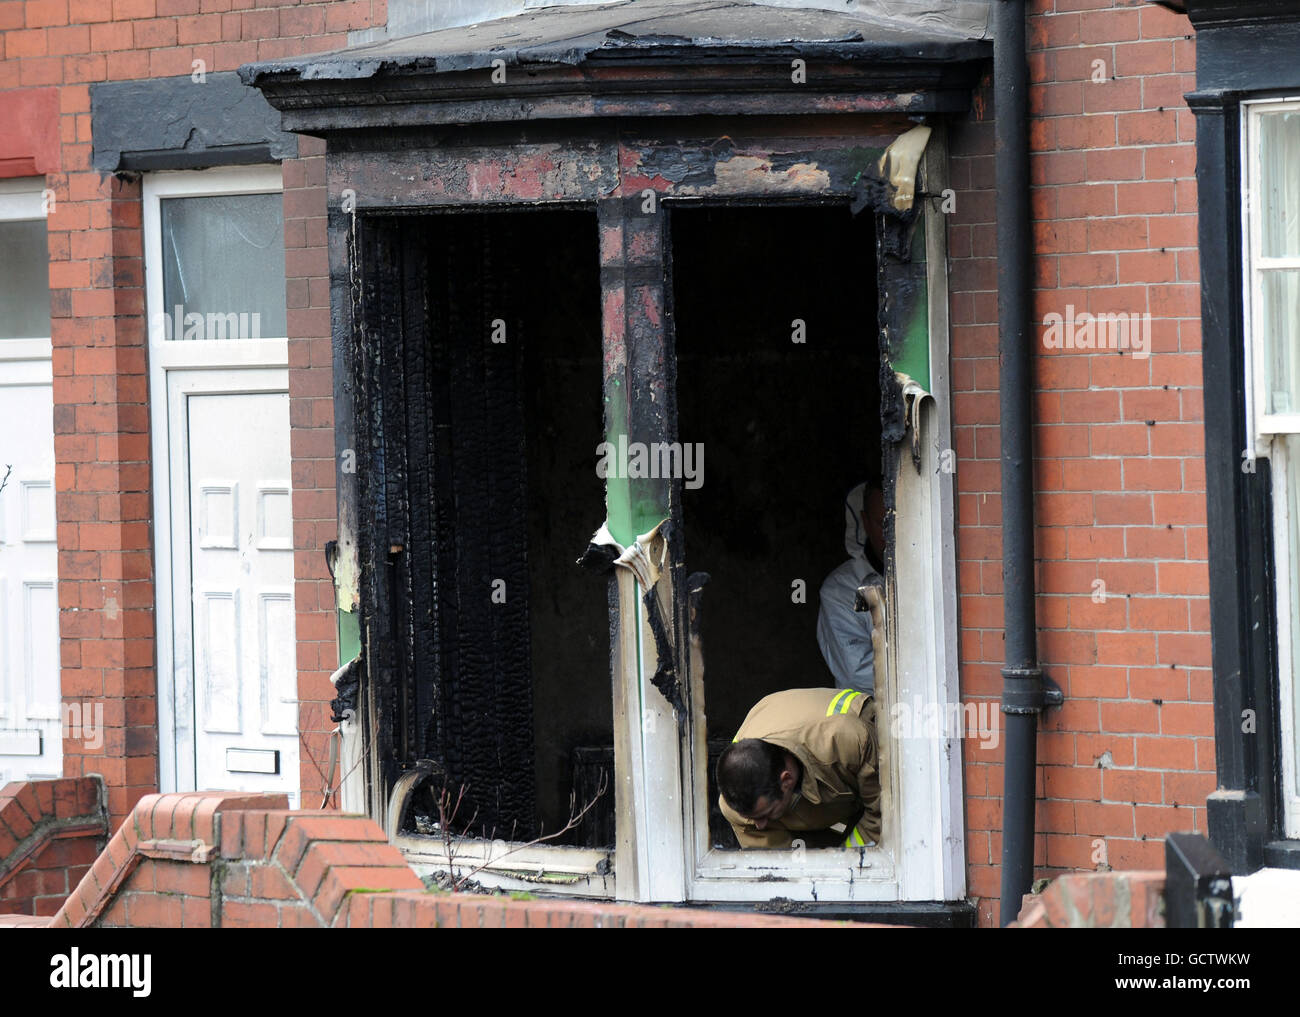 Hausbrand tötet 3 Kinder. Forensische Beamte am Ort eines Hausbrands in Bridlington, East Yorkshire, wo drei Kinder starben. Stockfoto